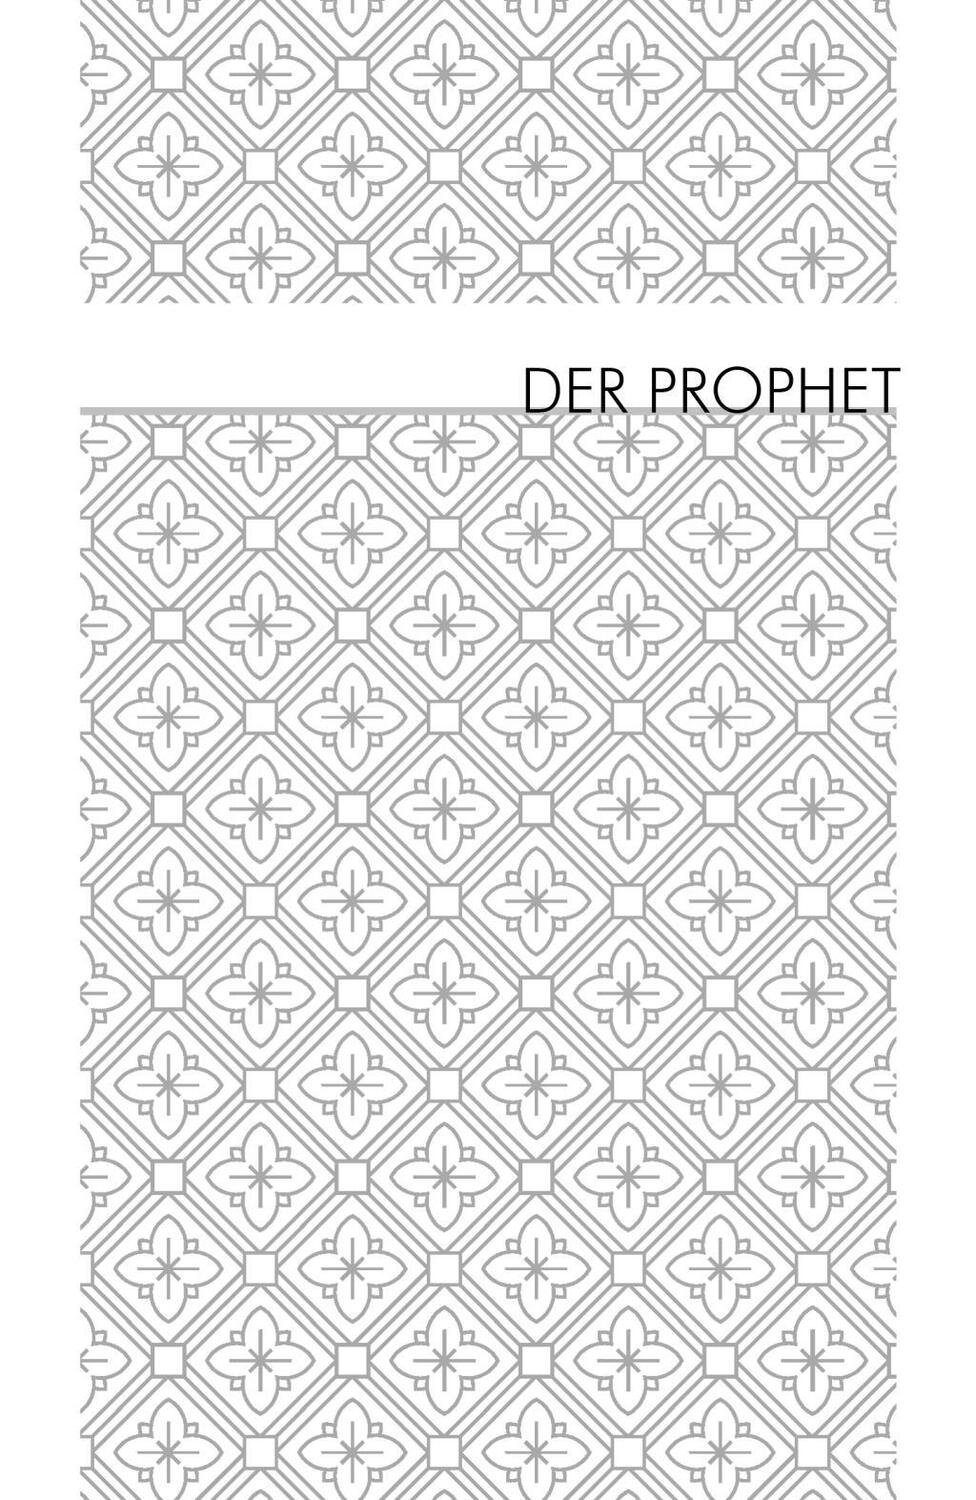 Bild: 9783866474642 | Der Prophet. Der Narr. Der Wanderer | Khalil Gibran | Buch | 256 S.